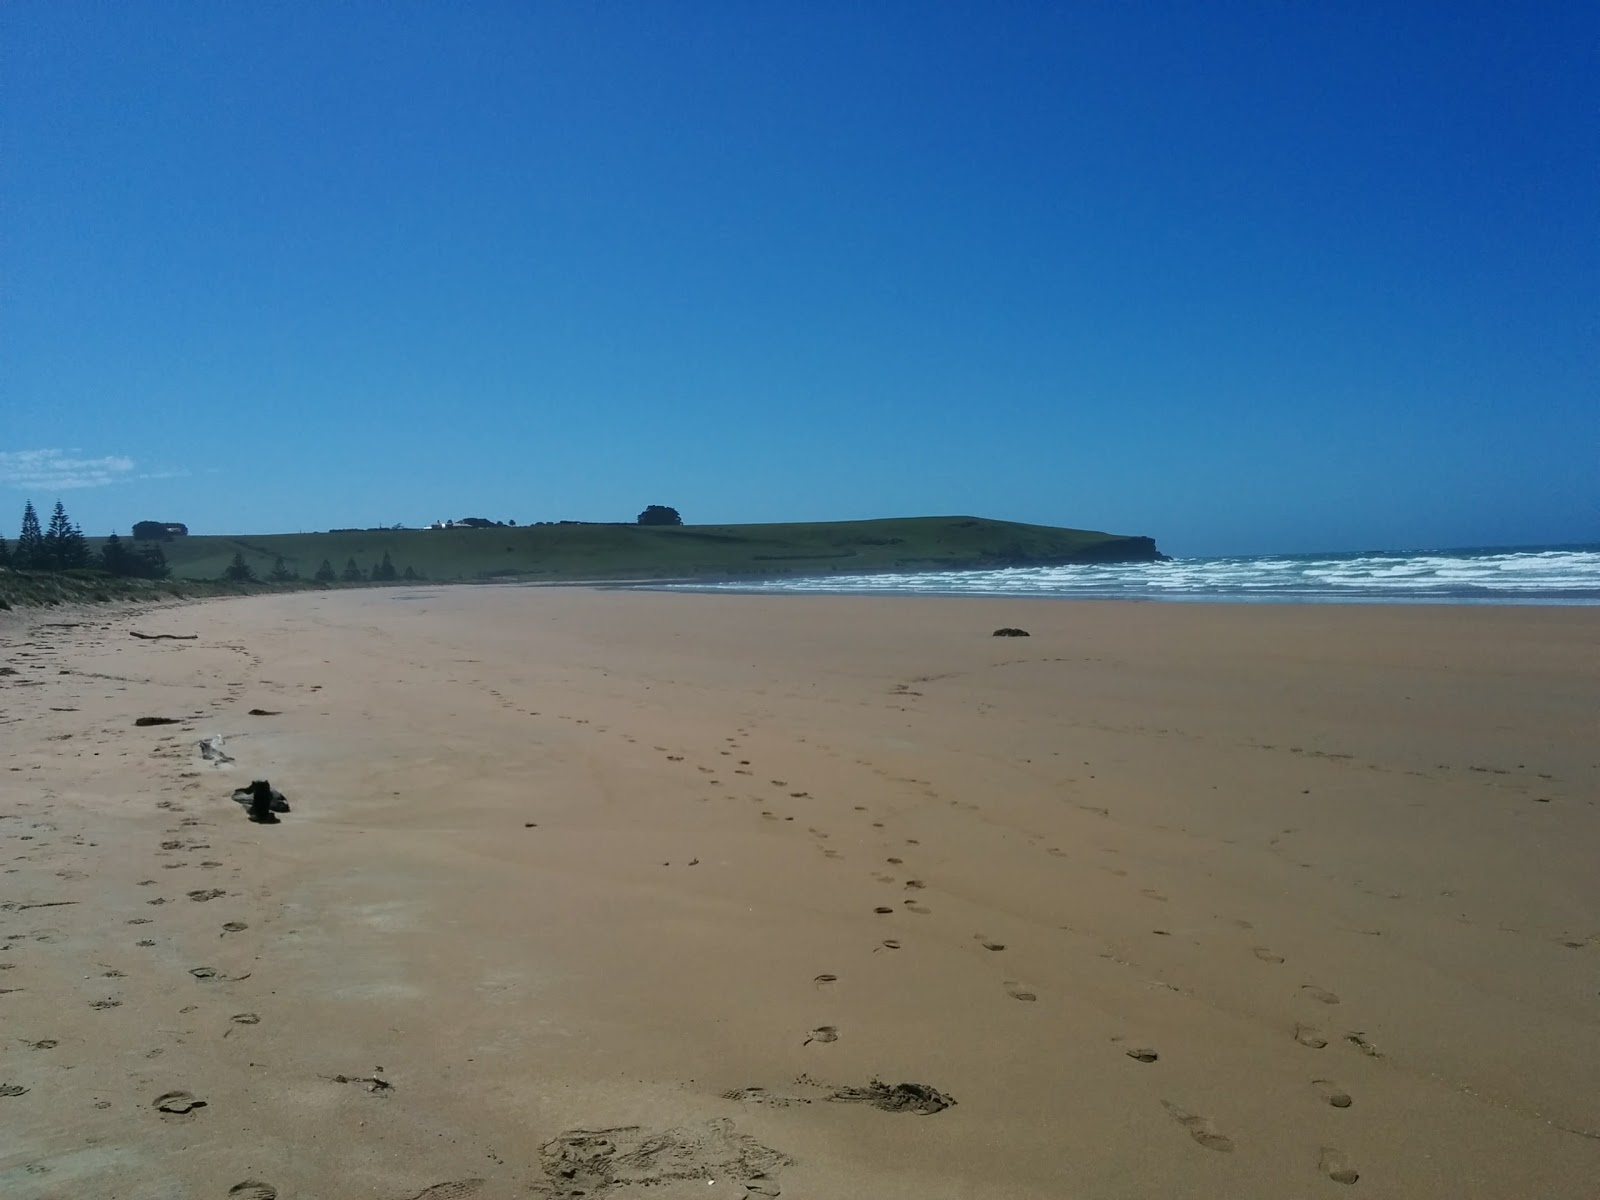 Fotografie cu Godfreys Beach - locul popular printre cunoscătorii de relaxare